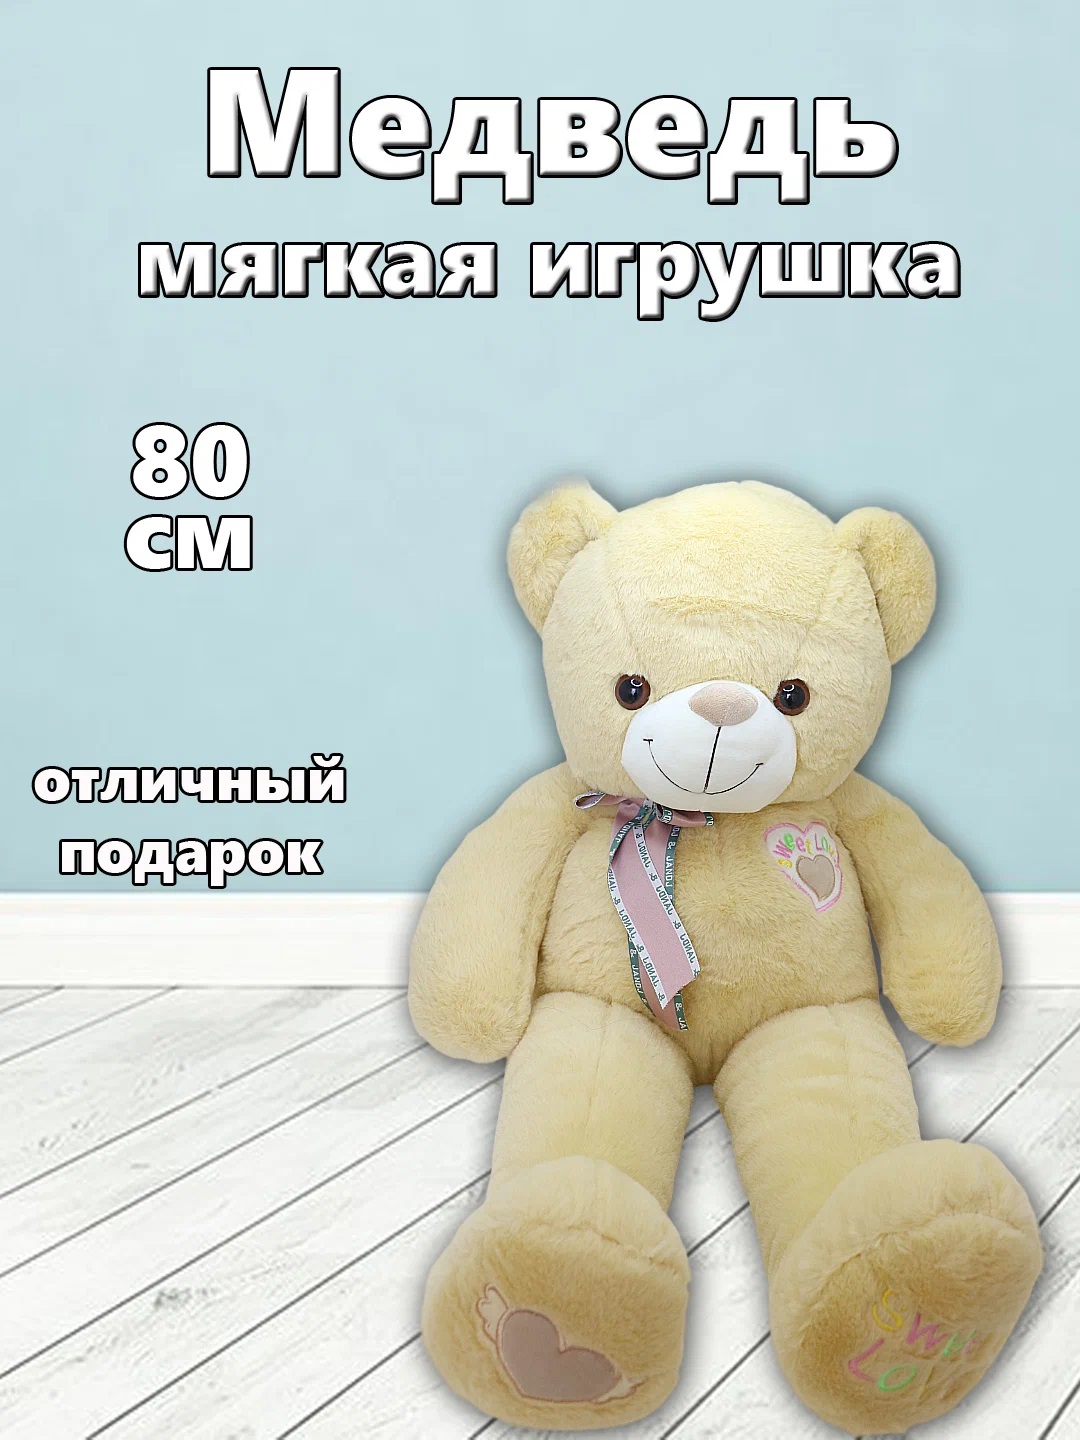 Мягкая игрушка TM S+S Медведь 80см коричневый мягкая игрушка abtoys флэтси медведь коричневый серый 27см